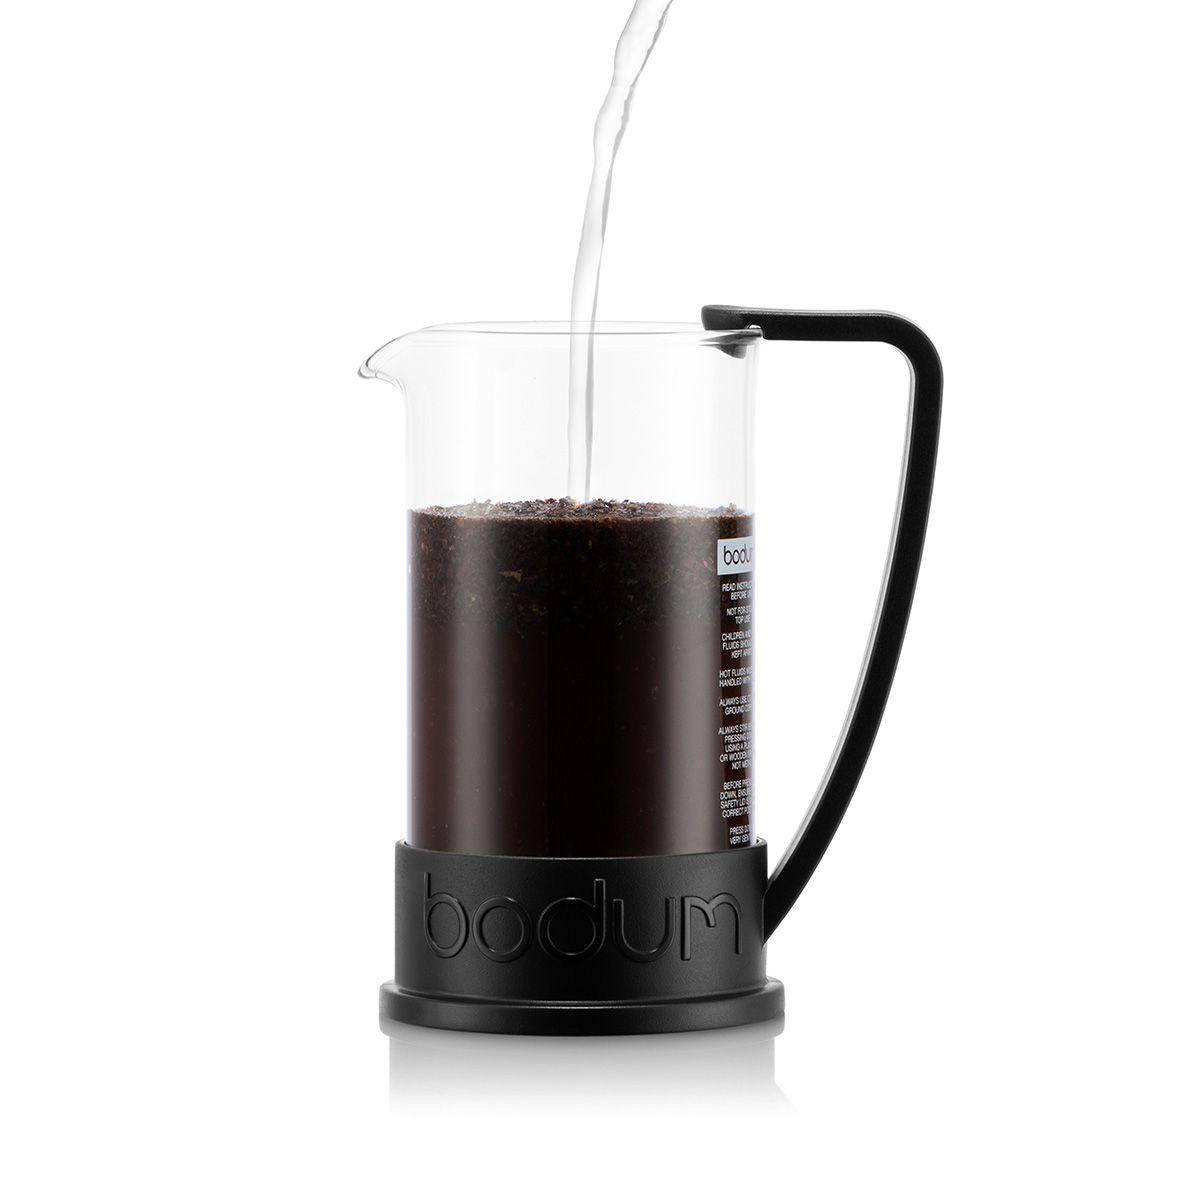 Bodum brasilien kaffemaskine sort 0,35 l, 3 kopper